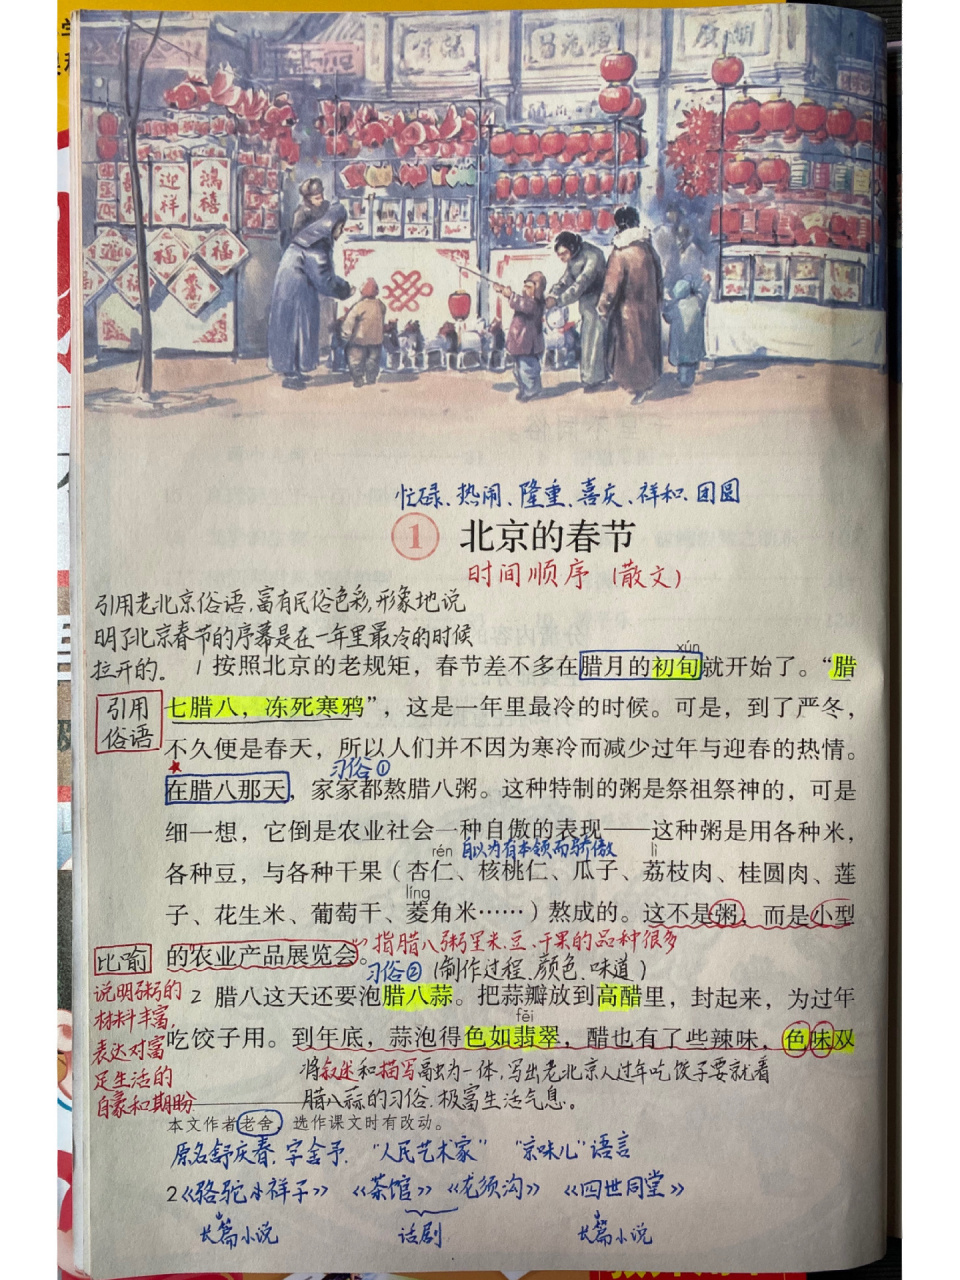 北京的春节的笔记学霸图片